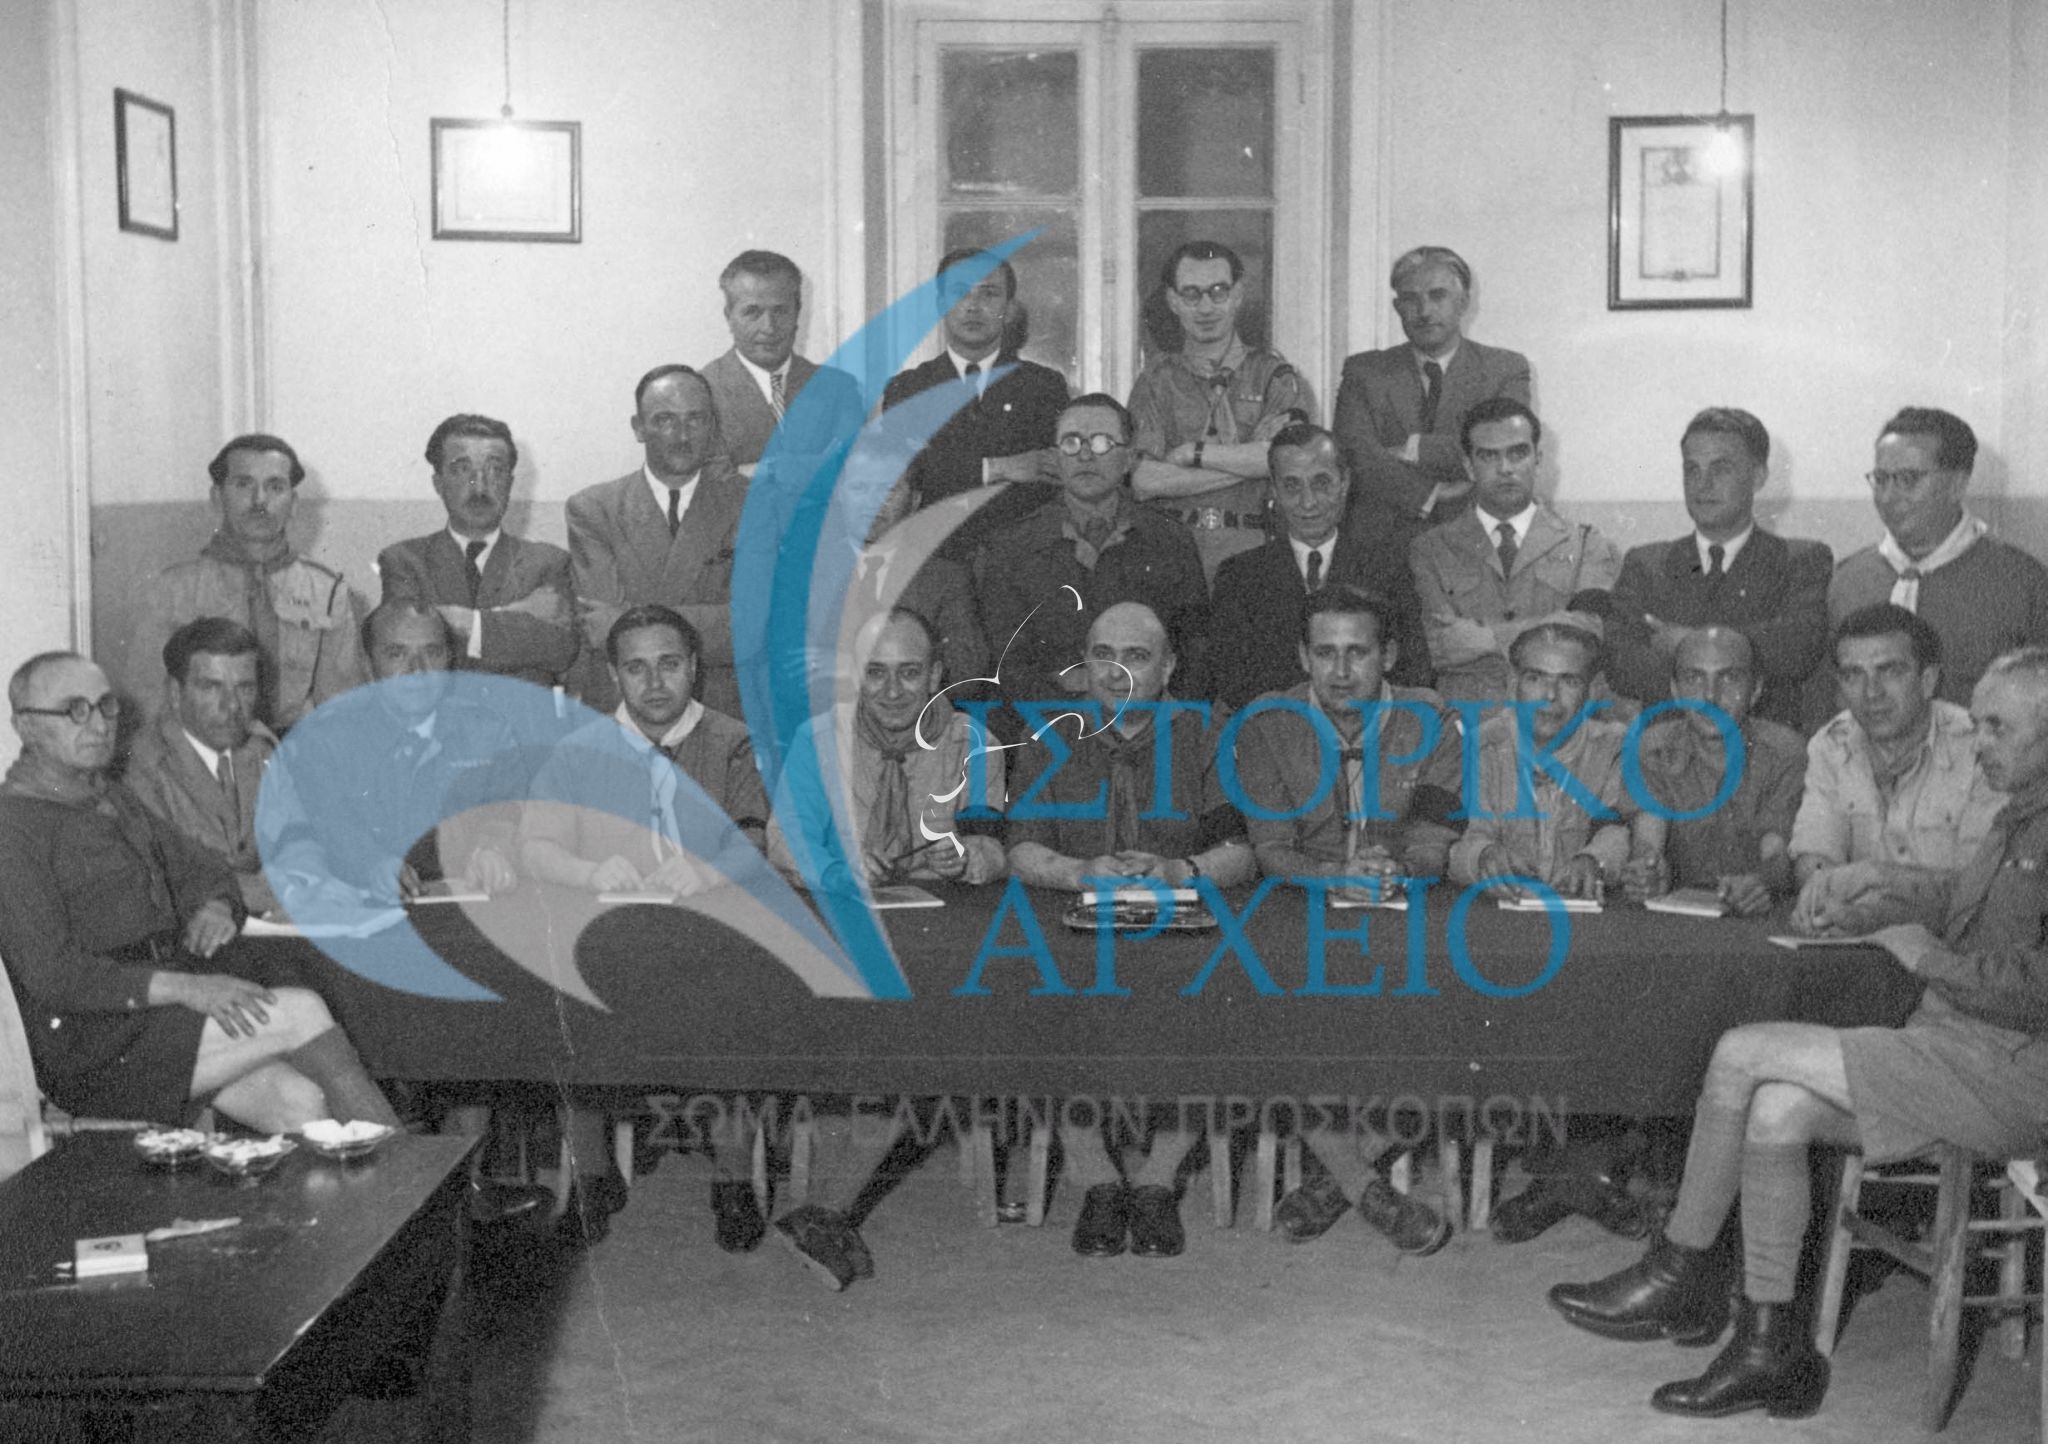 Σχολή εκπαίδευσης Εφόρων και Αρχηγών Συστημάτων το 1947